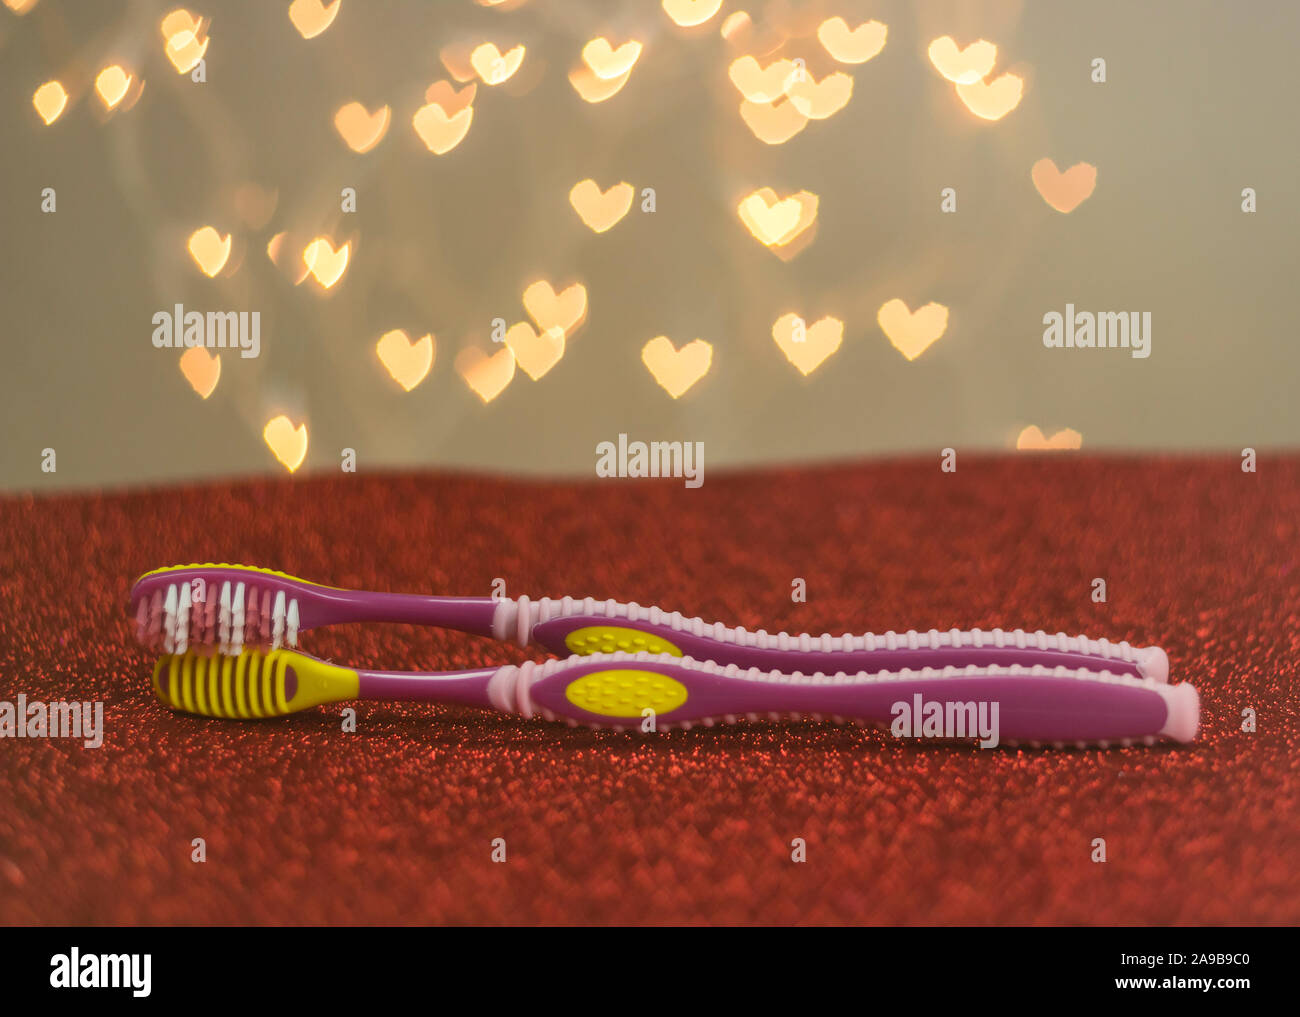 Saint Valentin brosse à dents romance. Brosse à dents LGBT couple métaphore pour l'intimité romantique Banque D'Images